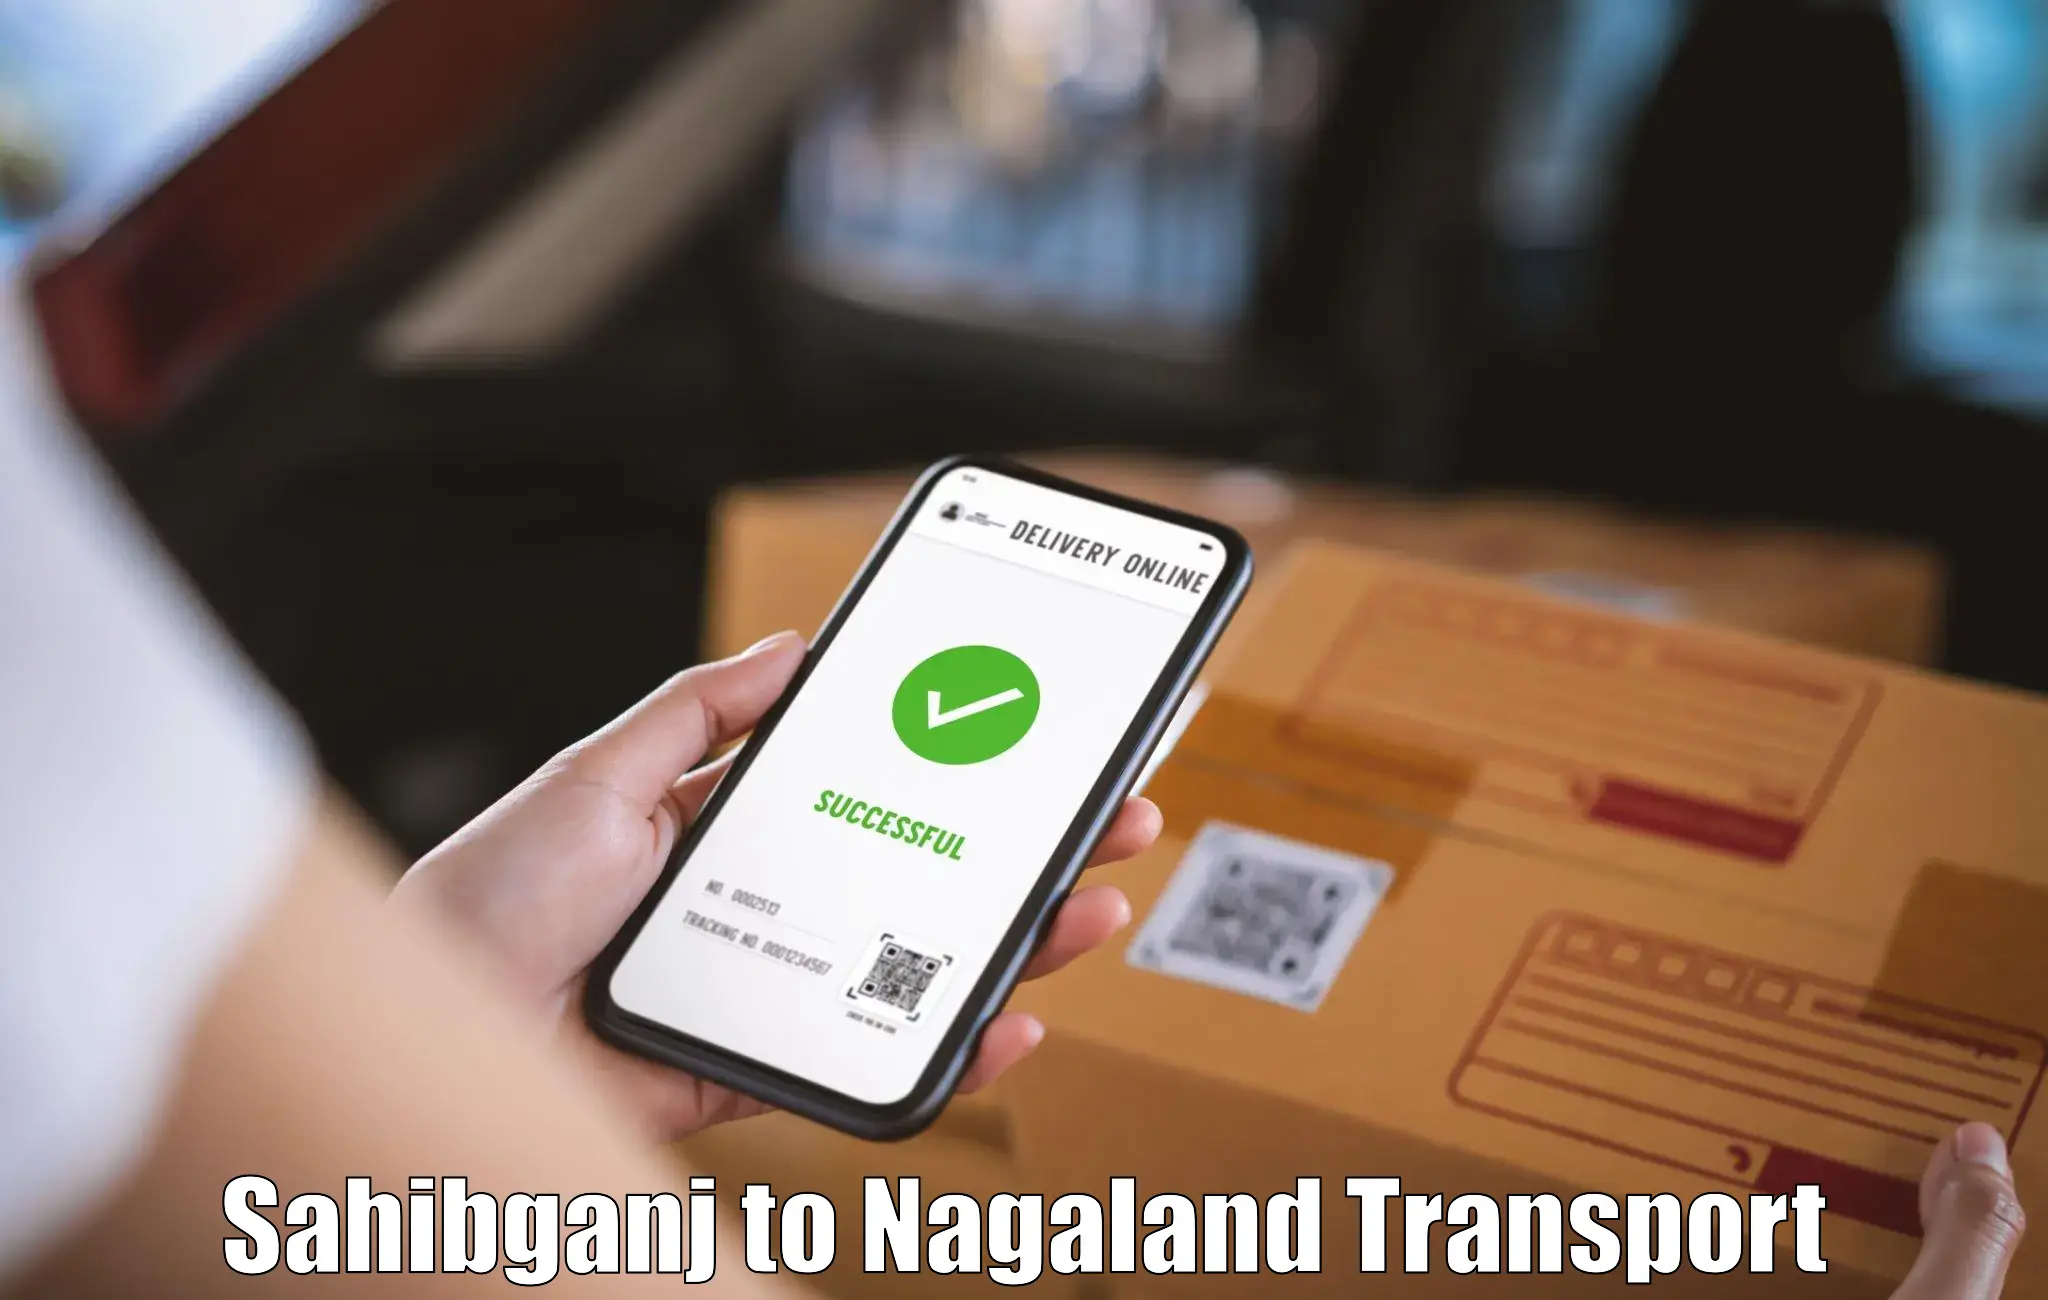 Transport in sharing Sahibganj to NIT Nagaland